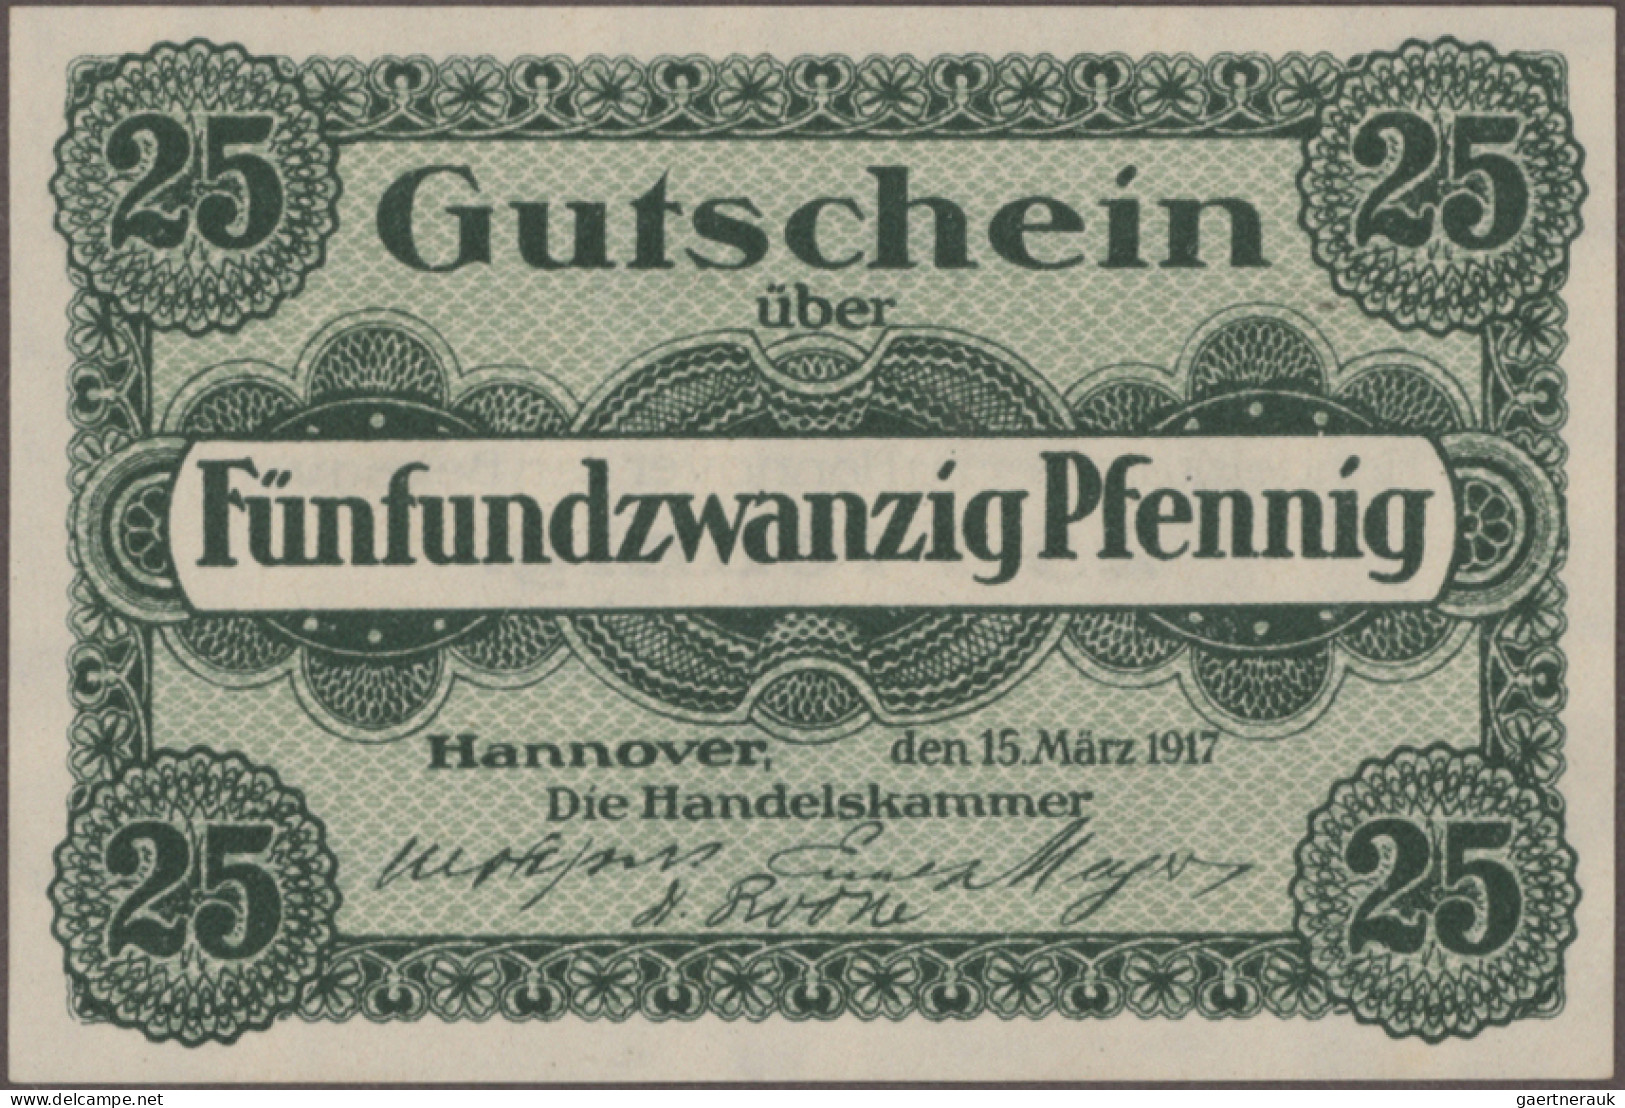 Deutschland - Notgeld: Kleingeldscheine ohne Serienscheine, Sammlung aus den 60e